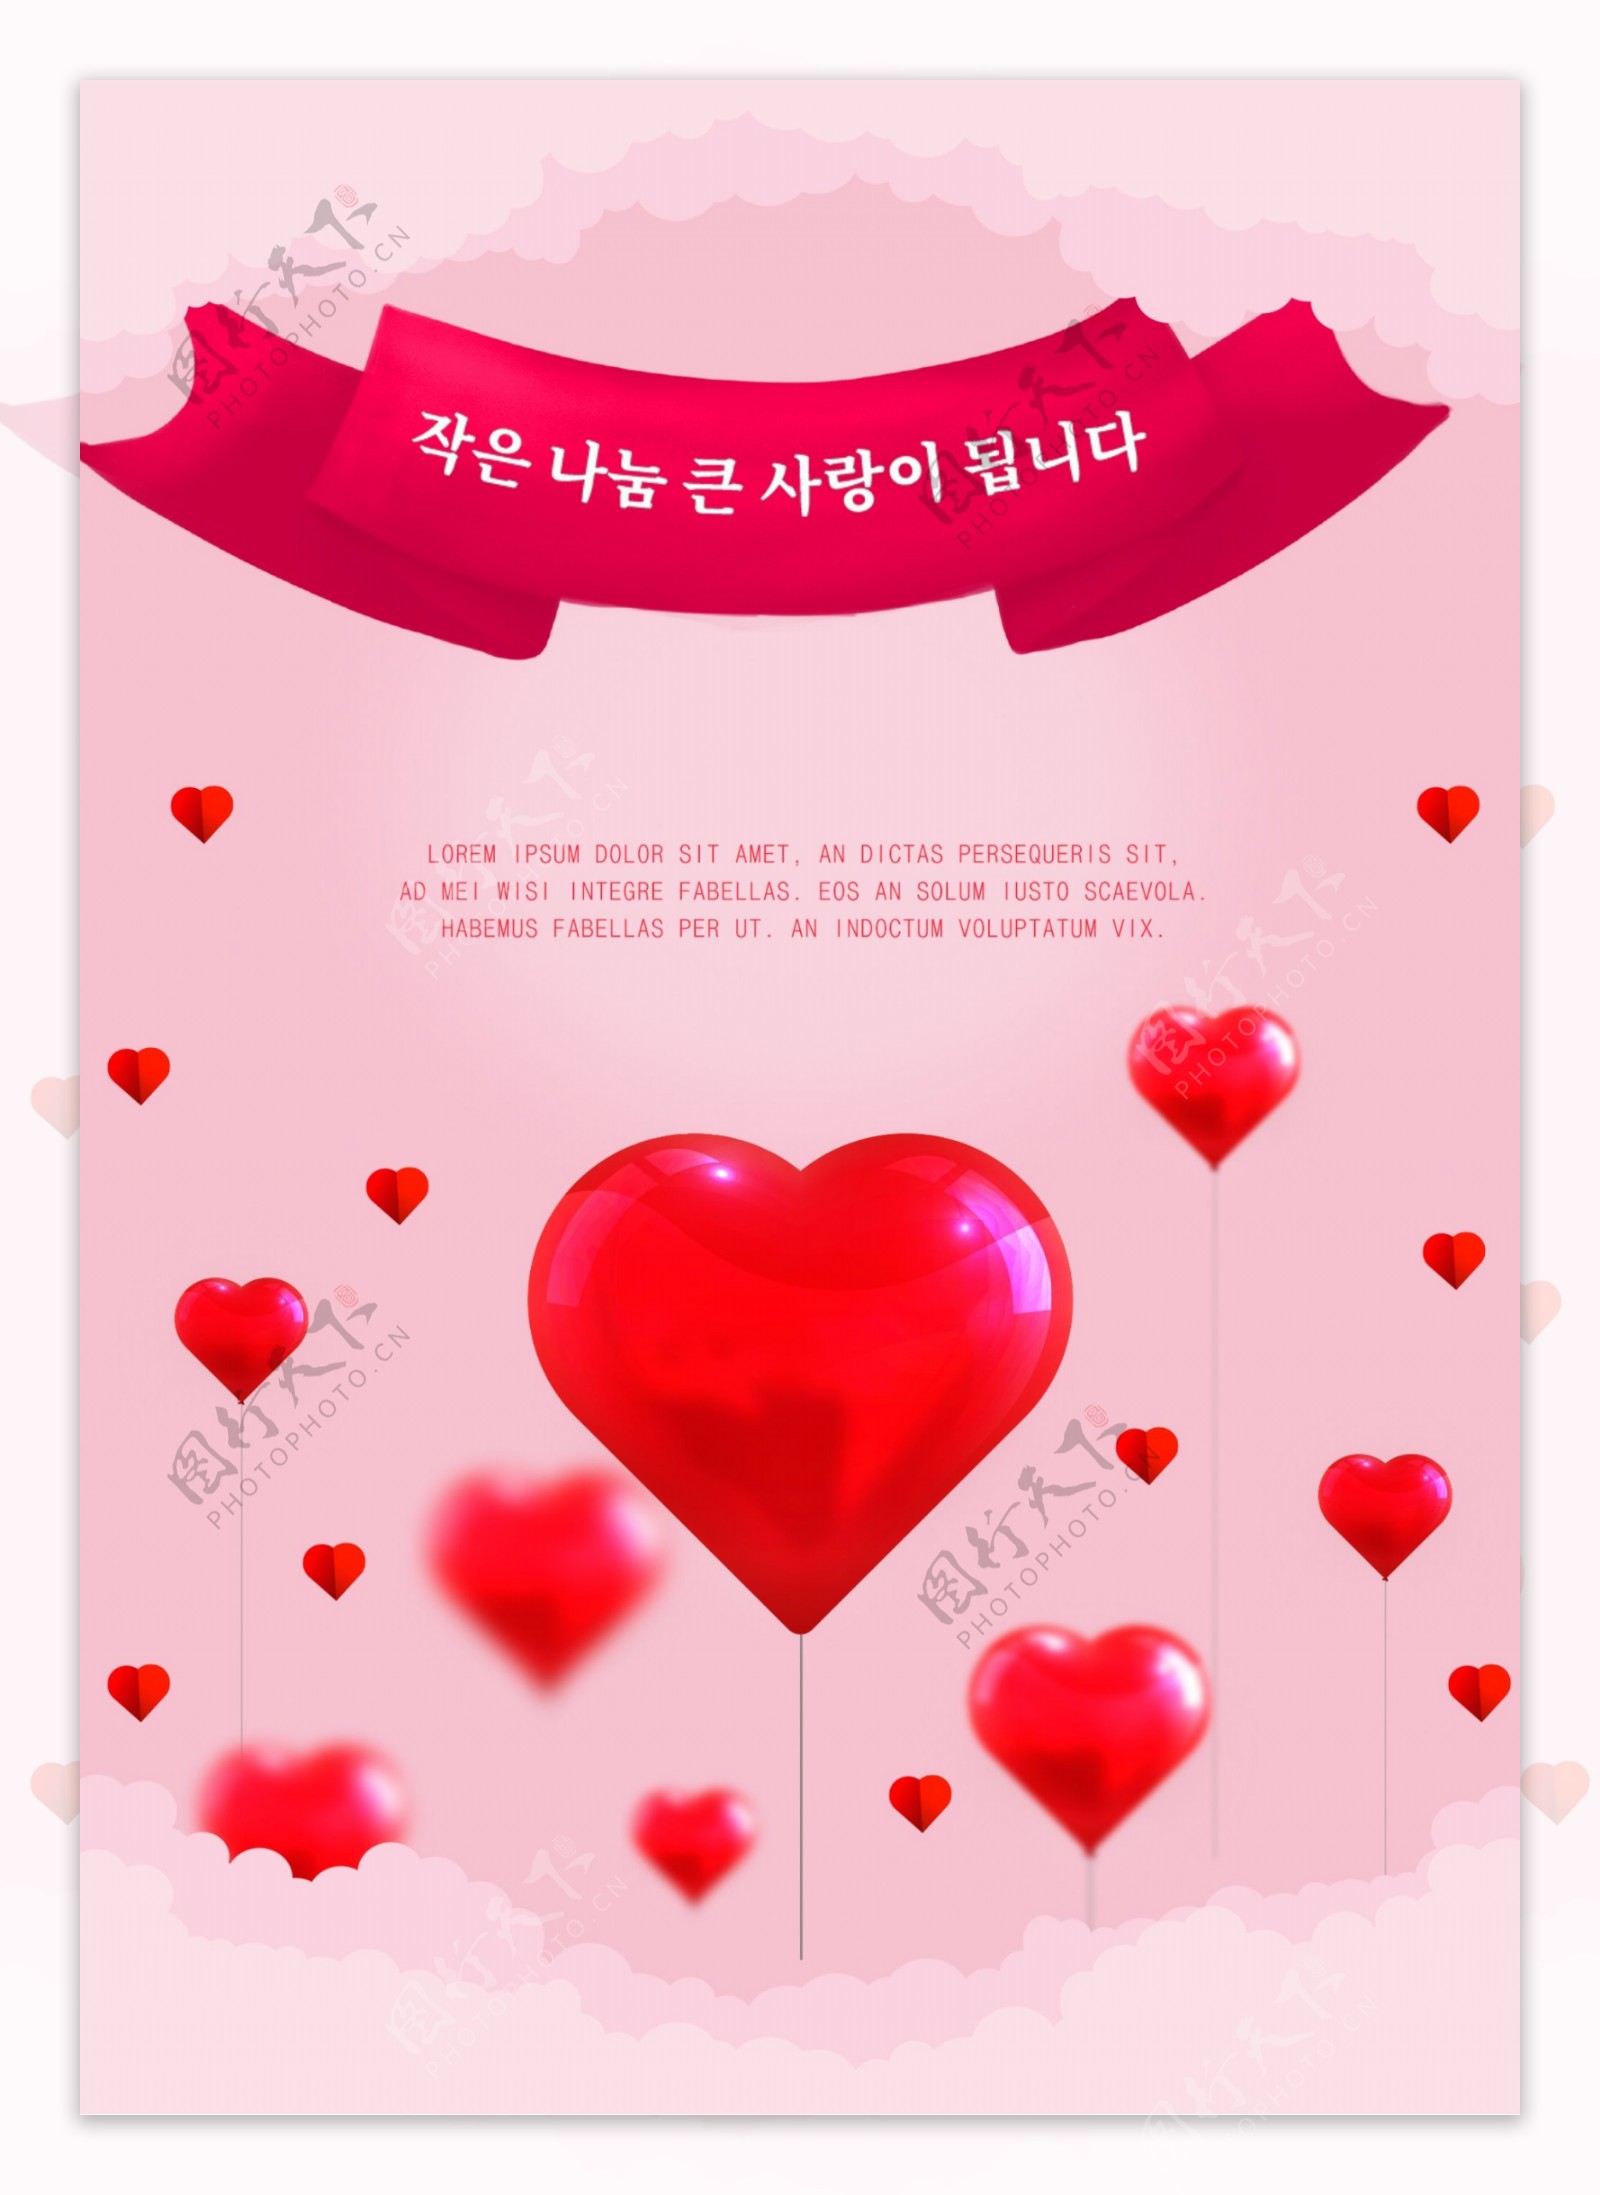 粉红色的爱分享海报设计